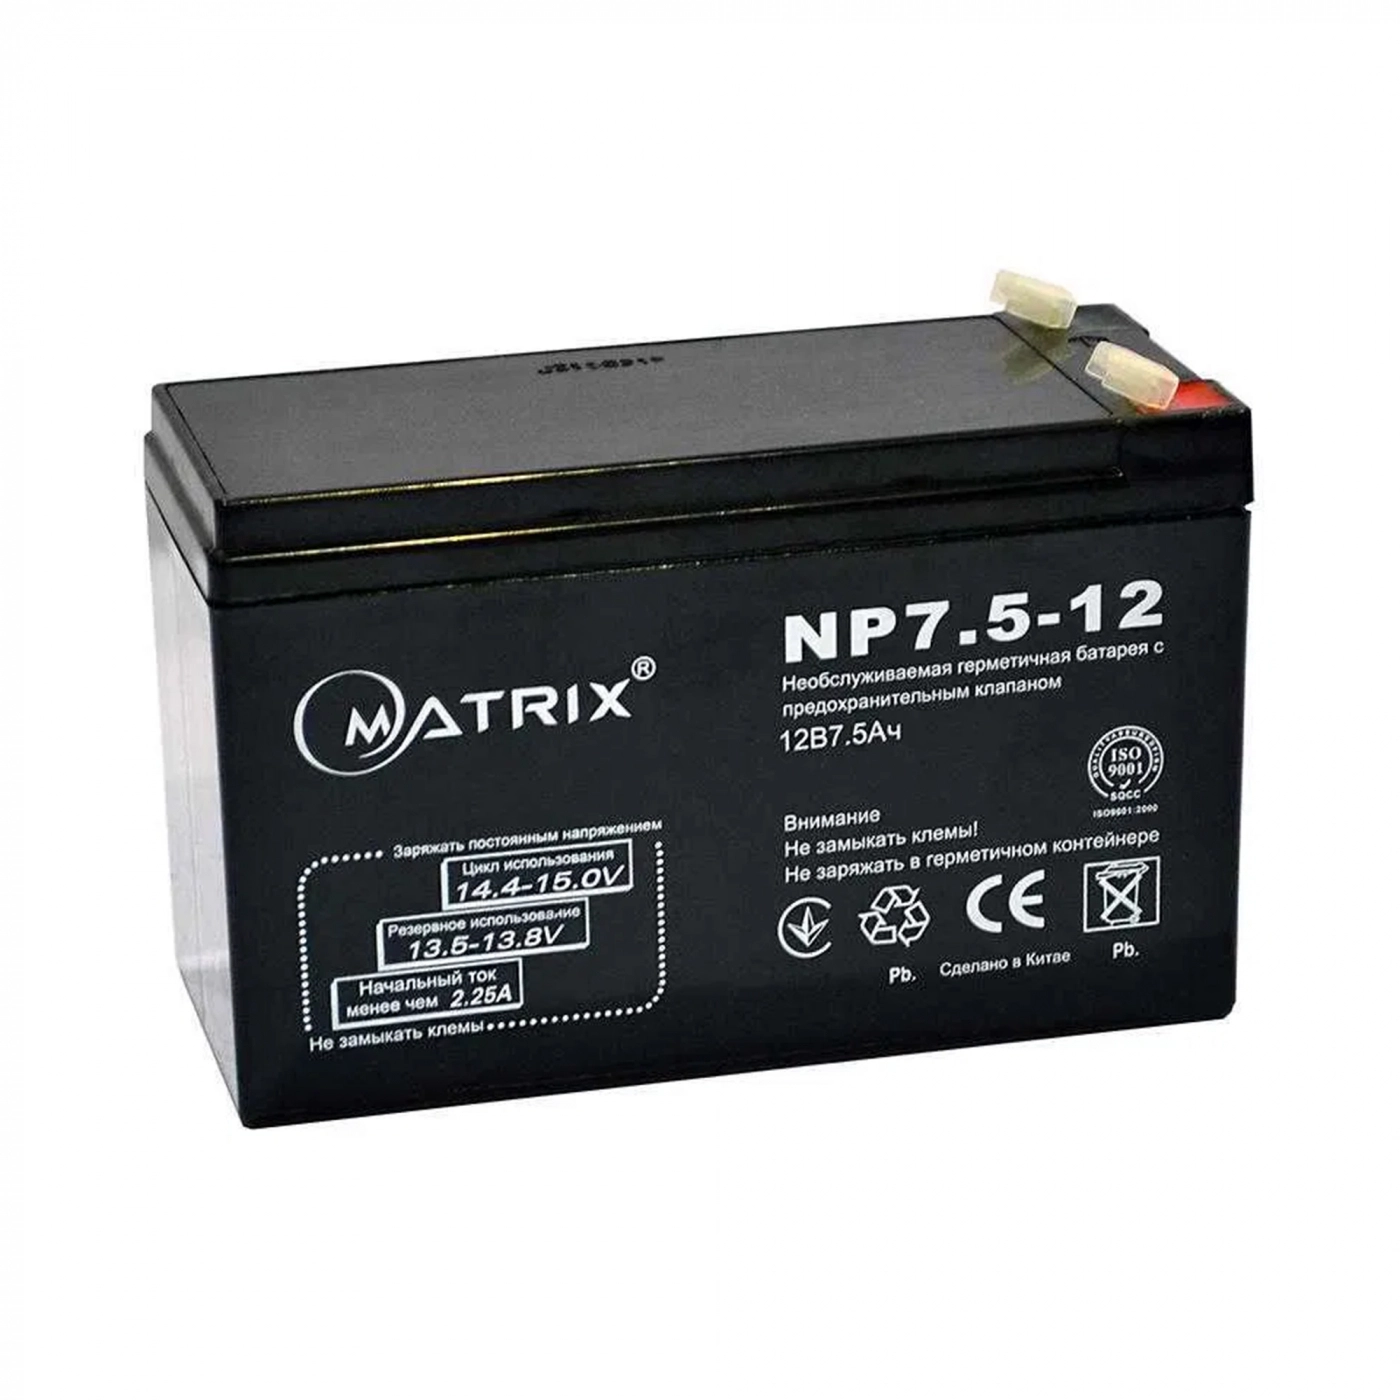 Купить Батарея к ИБП Matrix 12V 7.5Ah (NP7.5-12) - фото 1